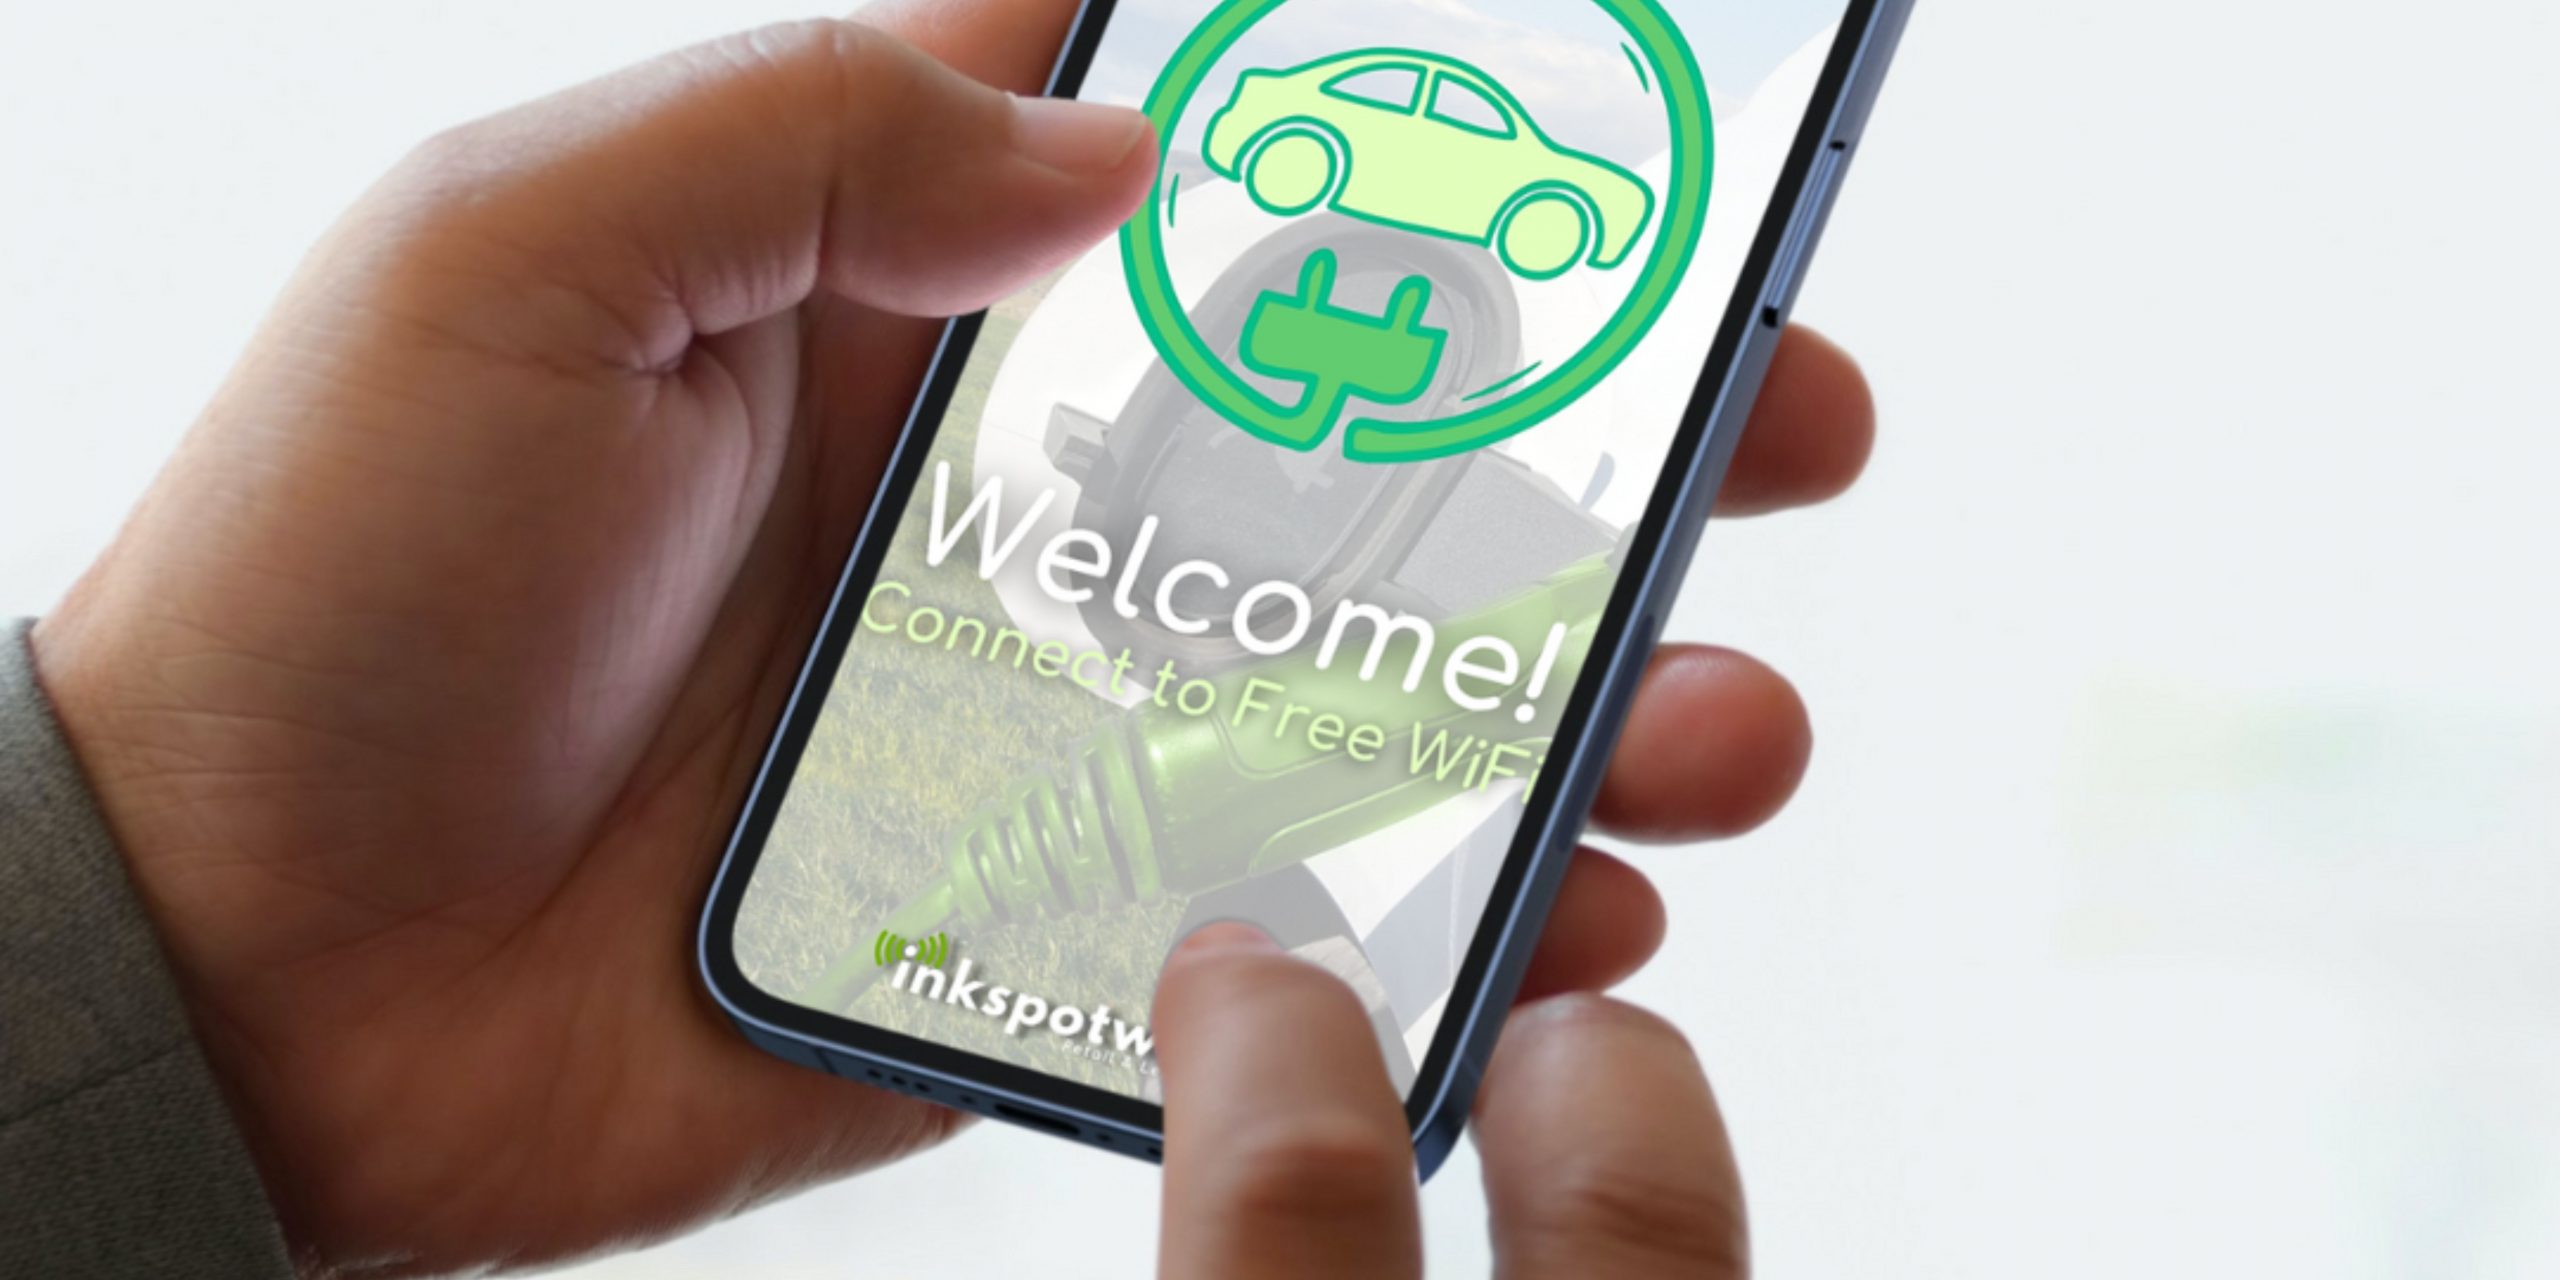 Mobile phone screen displaying welcome to free wifi, inkspotwifi